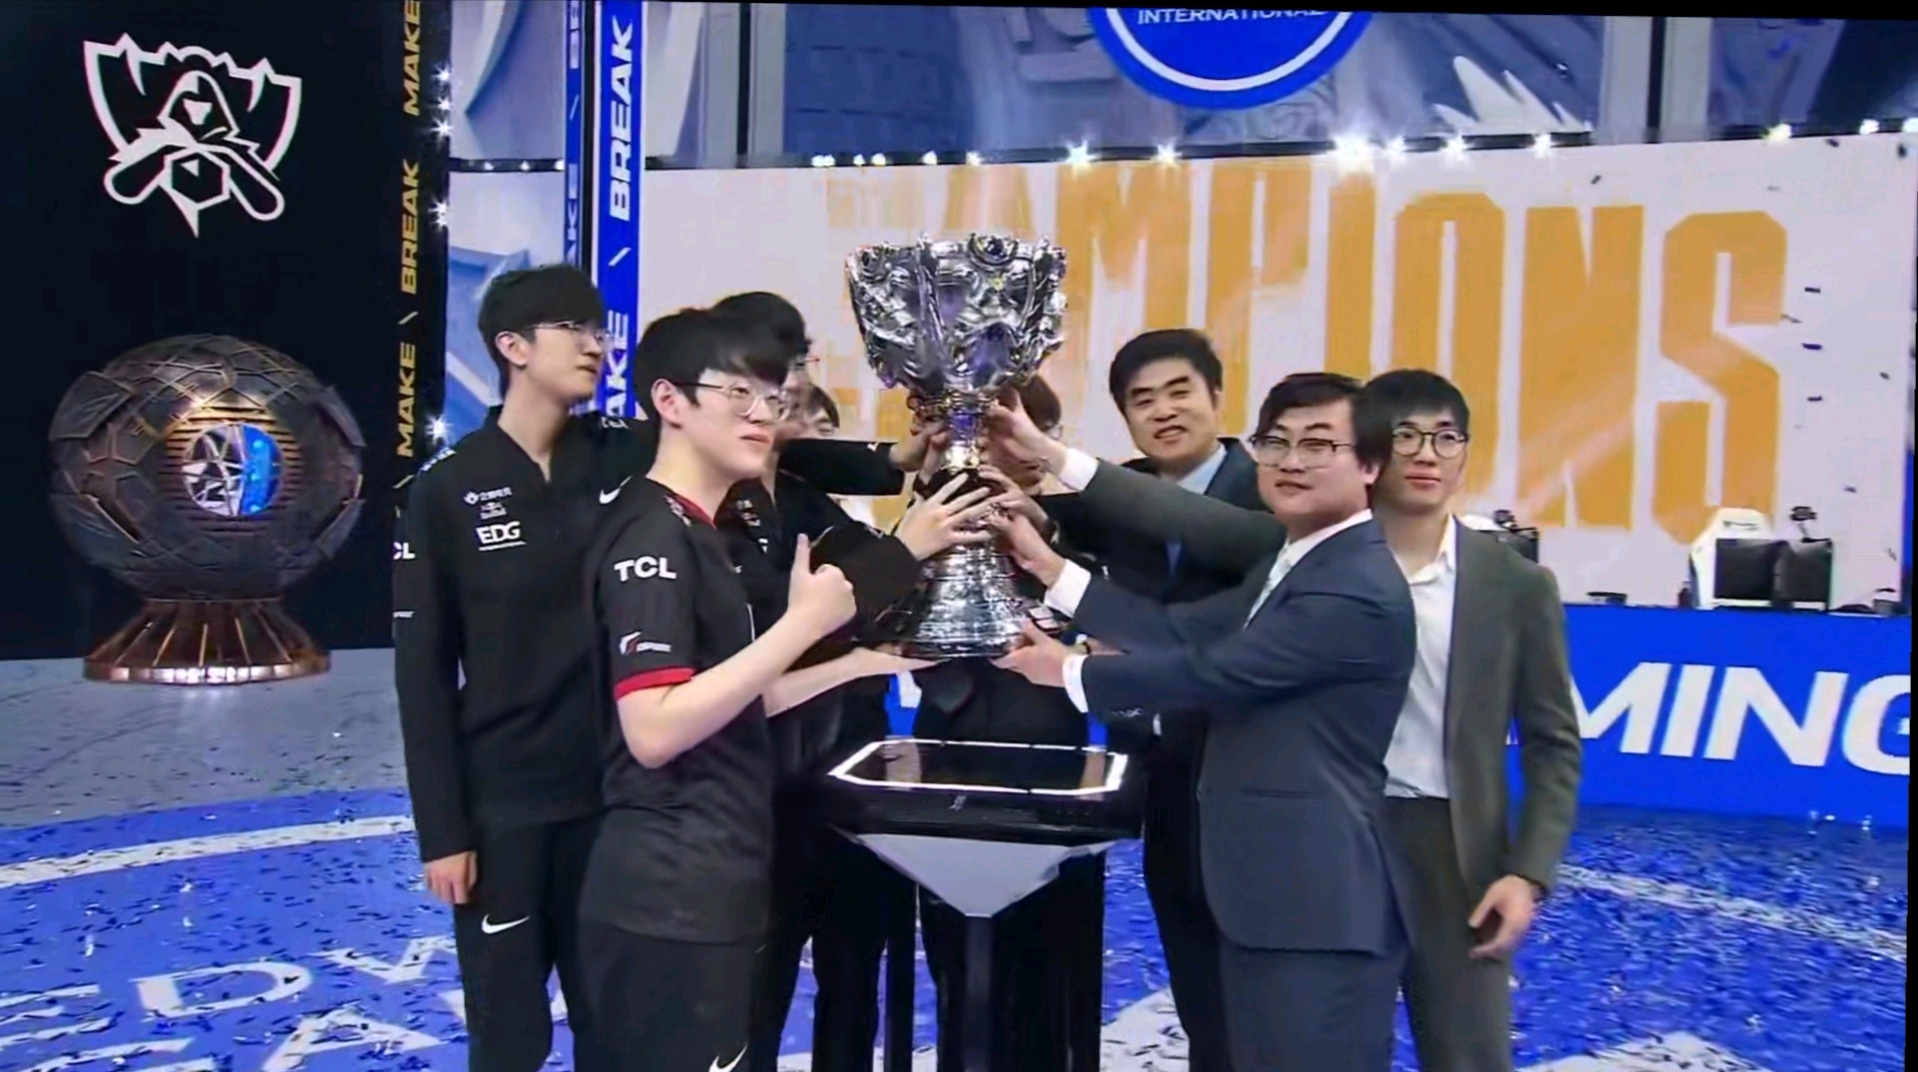 恭喜EDG3:2DK 抗韩成功 拿下英雄联盟S11全球总决赛冠军 - 知乎